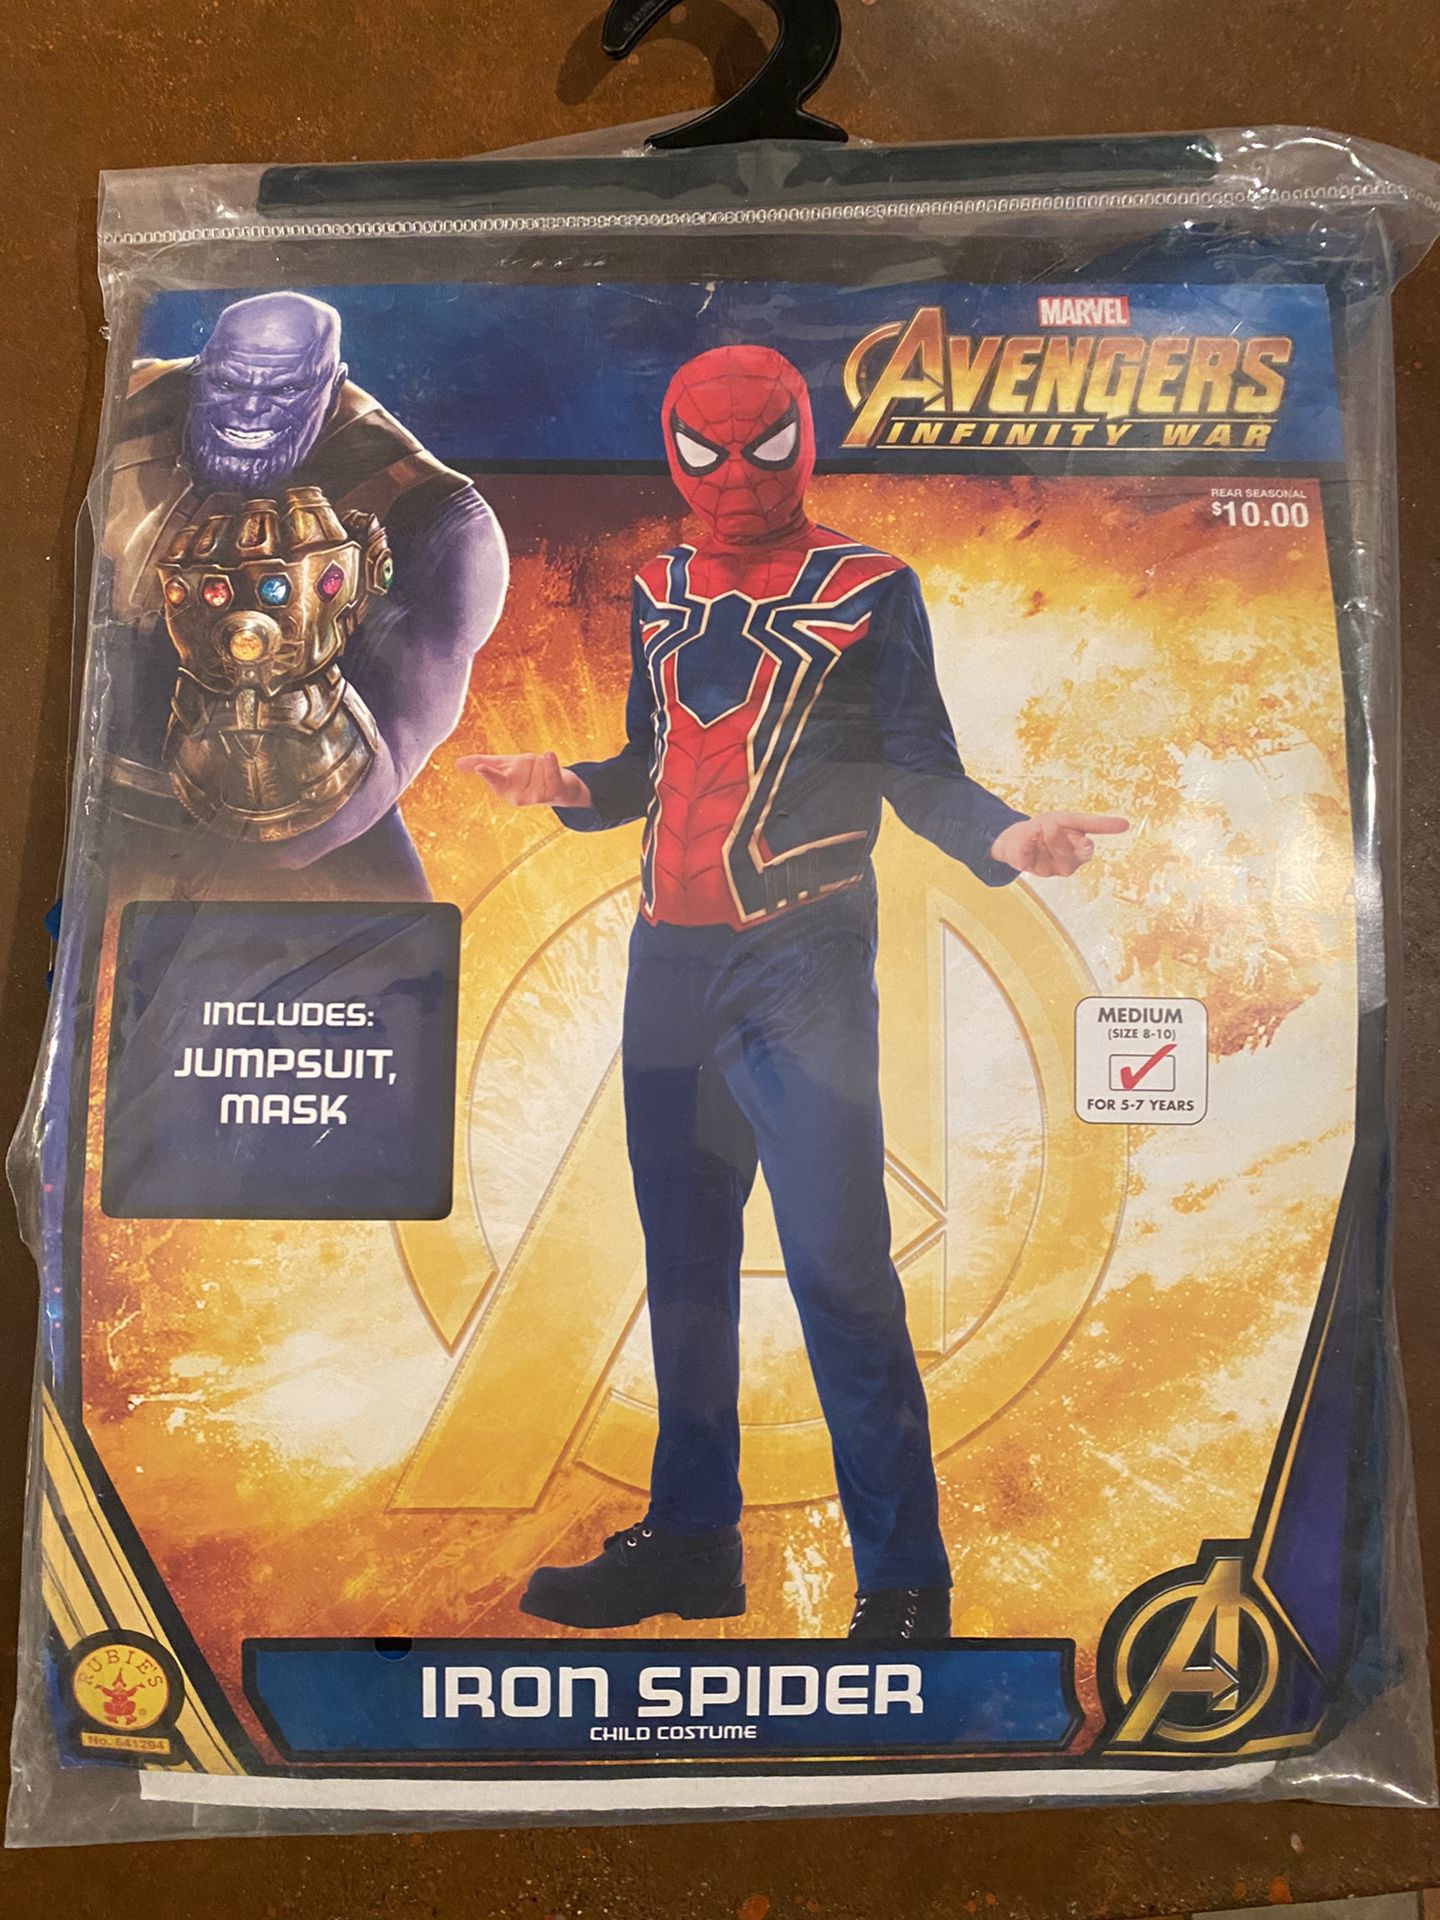 Boys Iron Spider Spider-Man Costume size 8-10